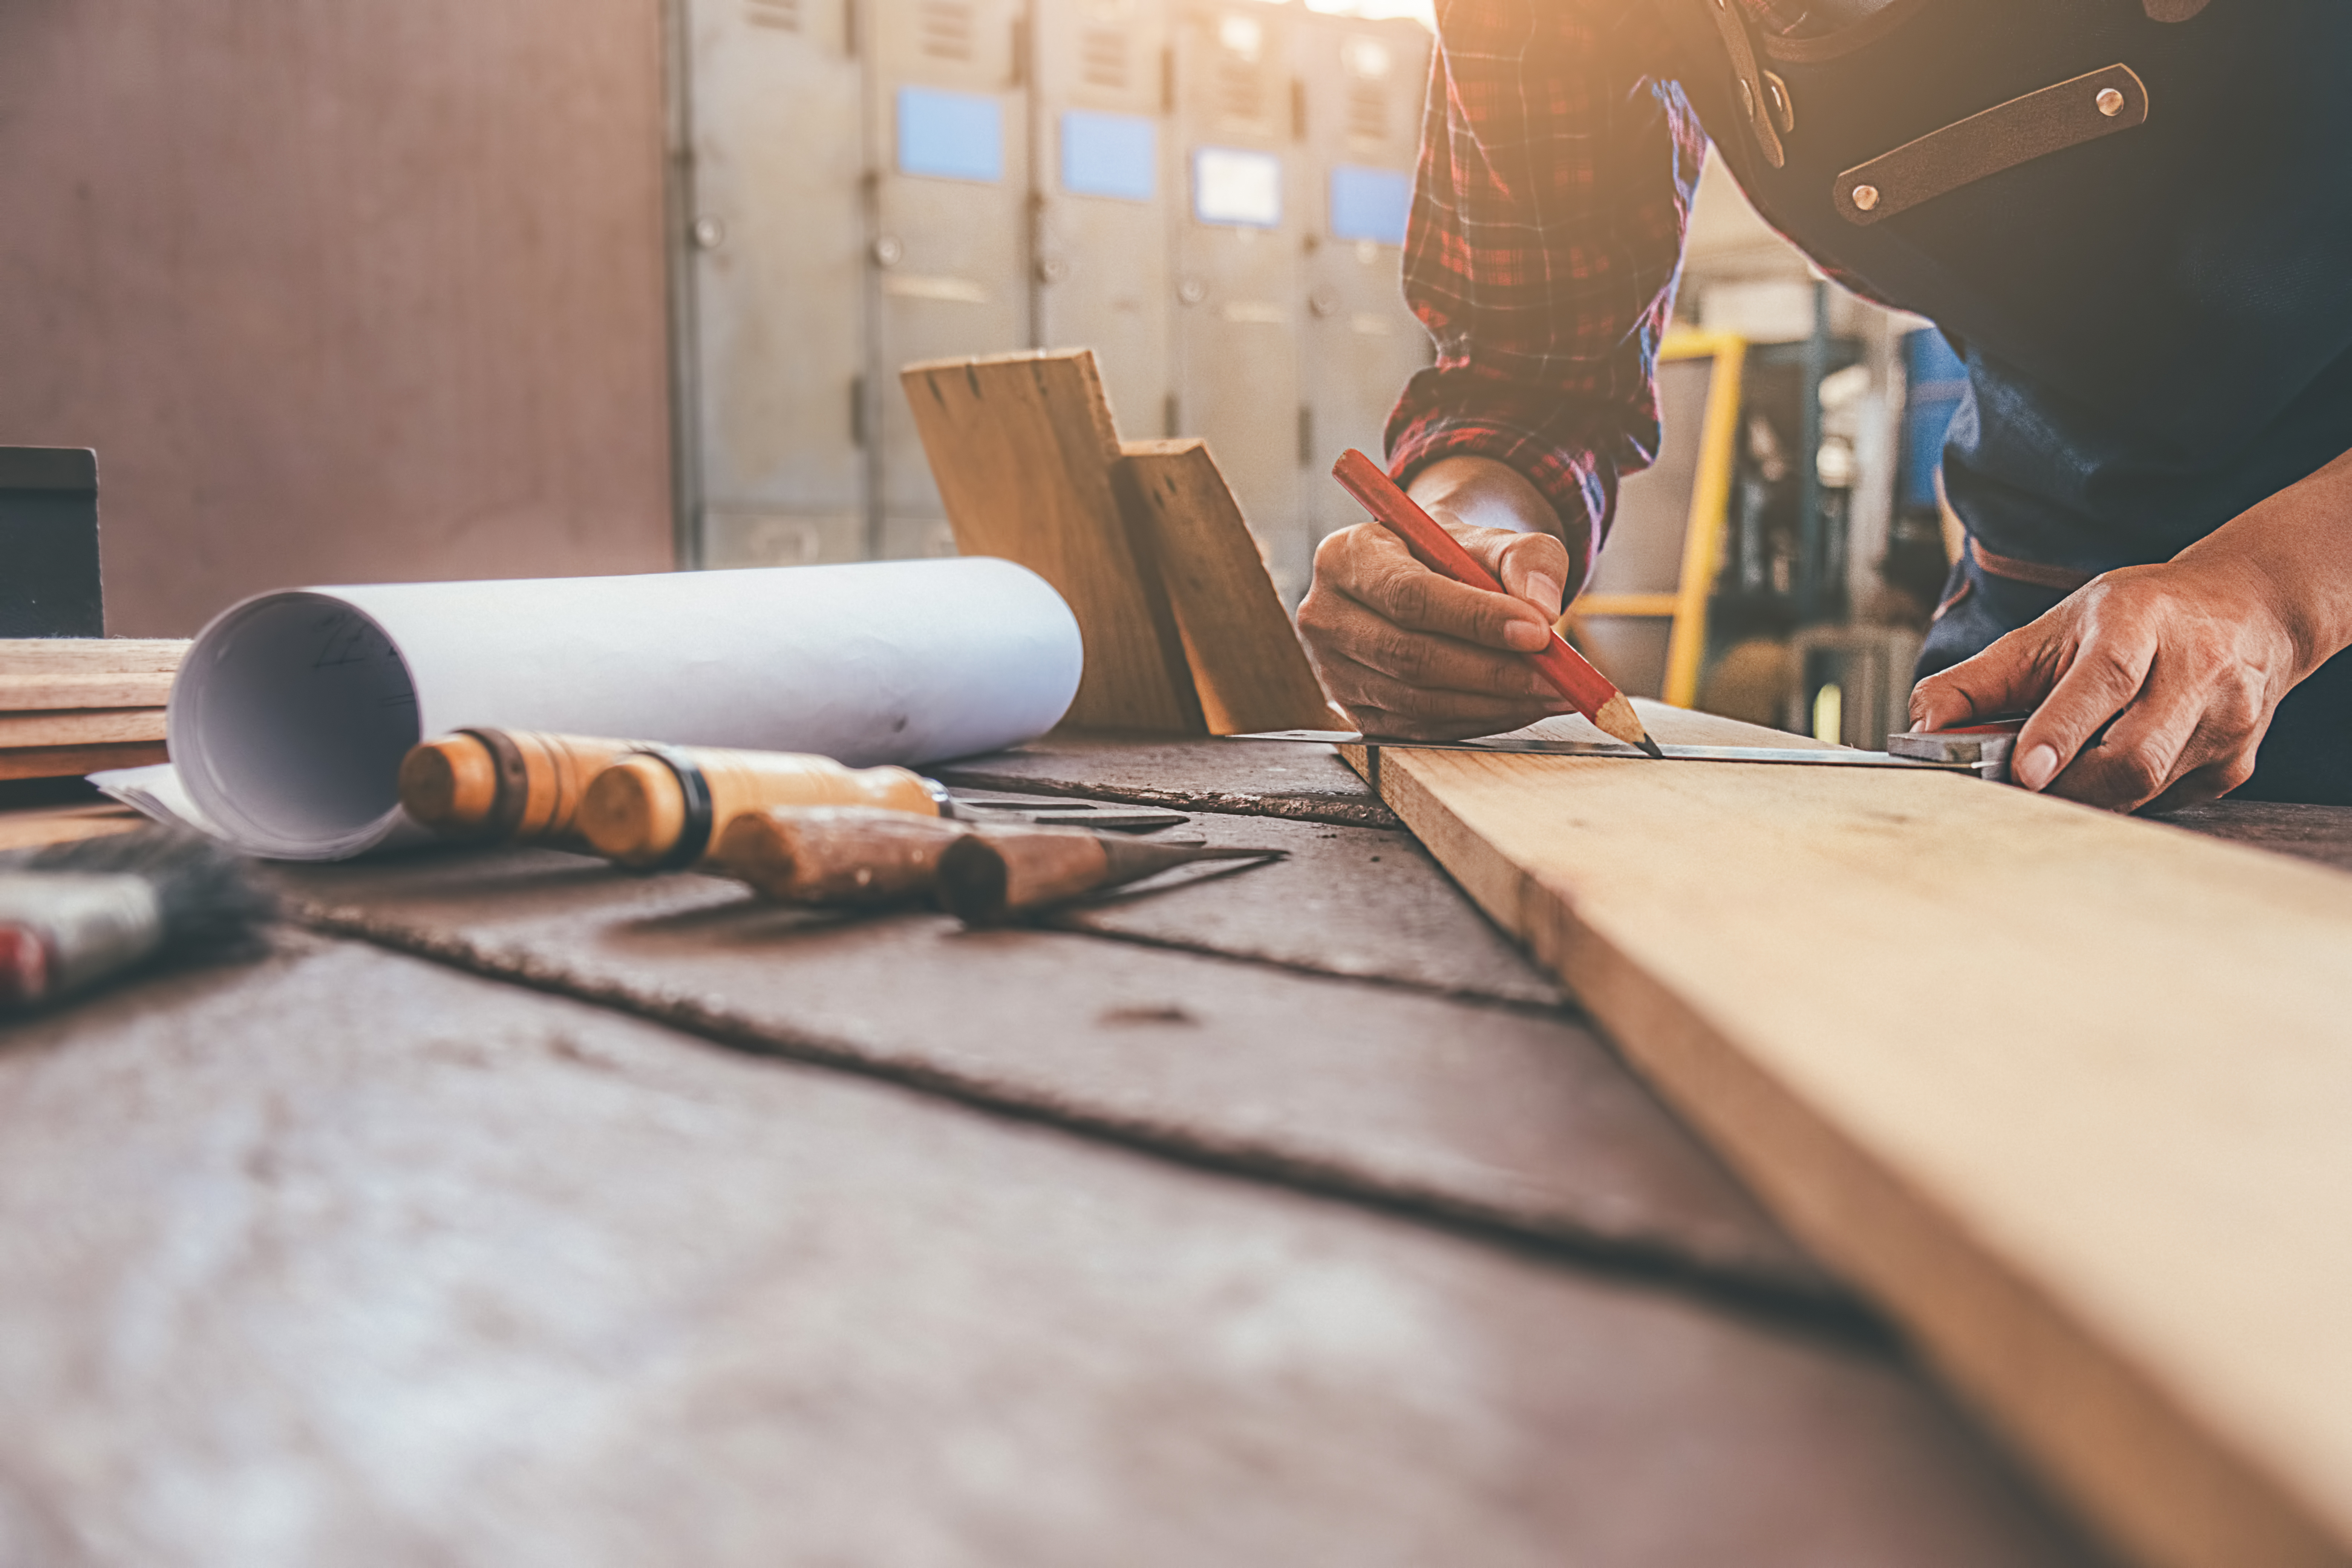 Handwerker markiert Messpunkte auf einem Holzbrett auf einer Werkbank mit Werkzeugen und Bauplänen im Vordergrund.